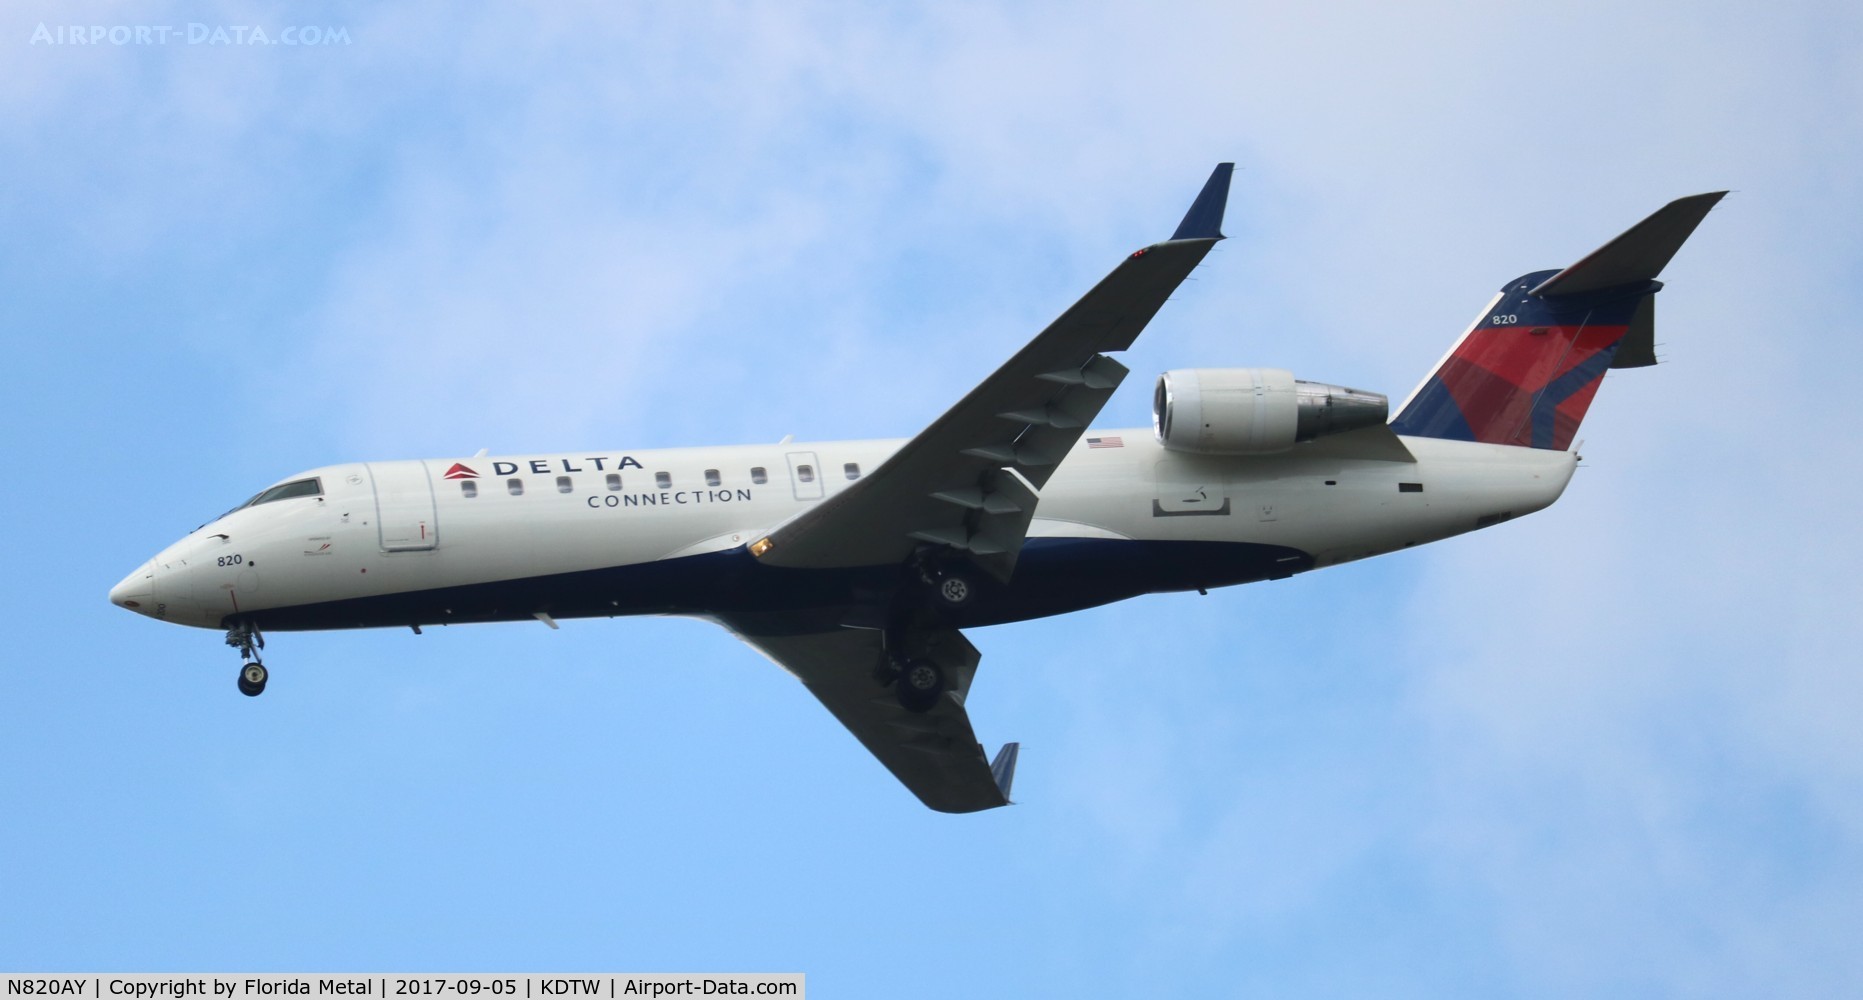 N820AY, 2005 Bombardier CRJ-200LR (CL-600-2B19) C/N 8020, Delta Connection